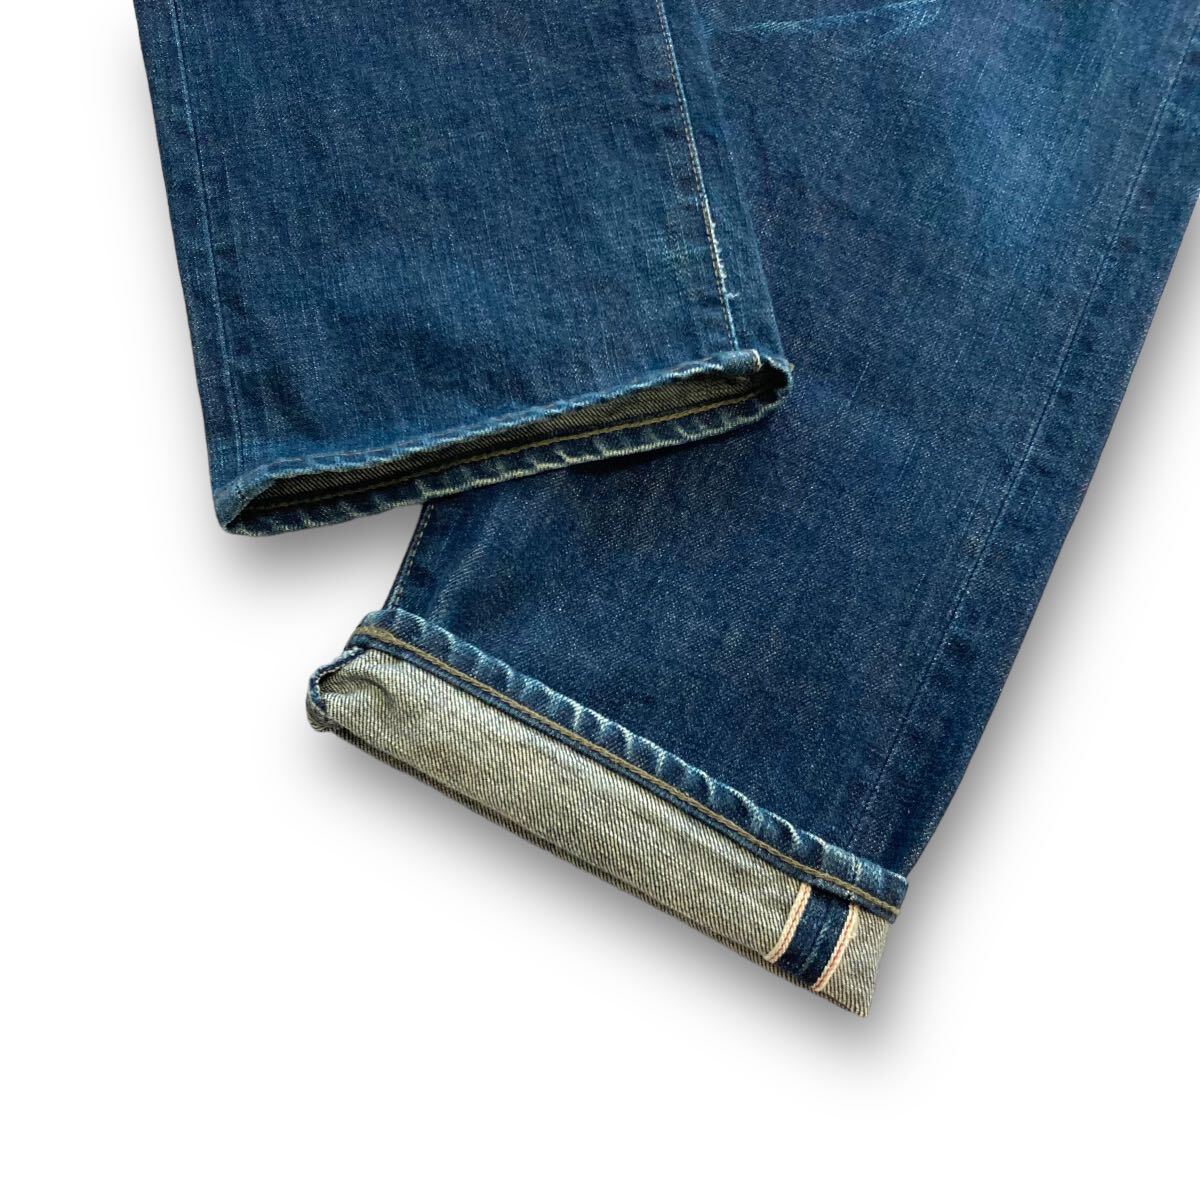 [NEIGHBORHOOD]07EX Neighborhood SAVAGE DENLM NARROW STRAIGHT Denim брюки джинсы красный уголок cell bichi кожа patch сделано в Японии (M)